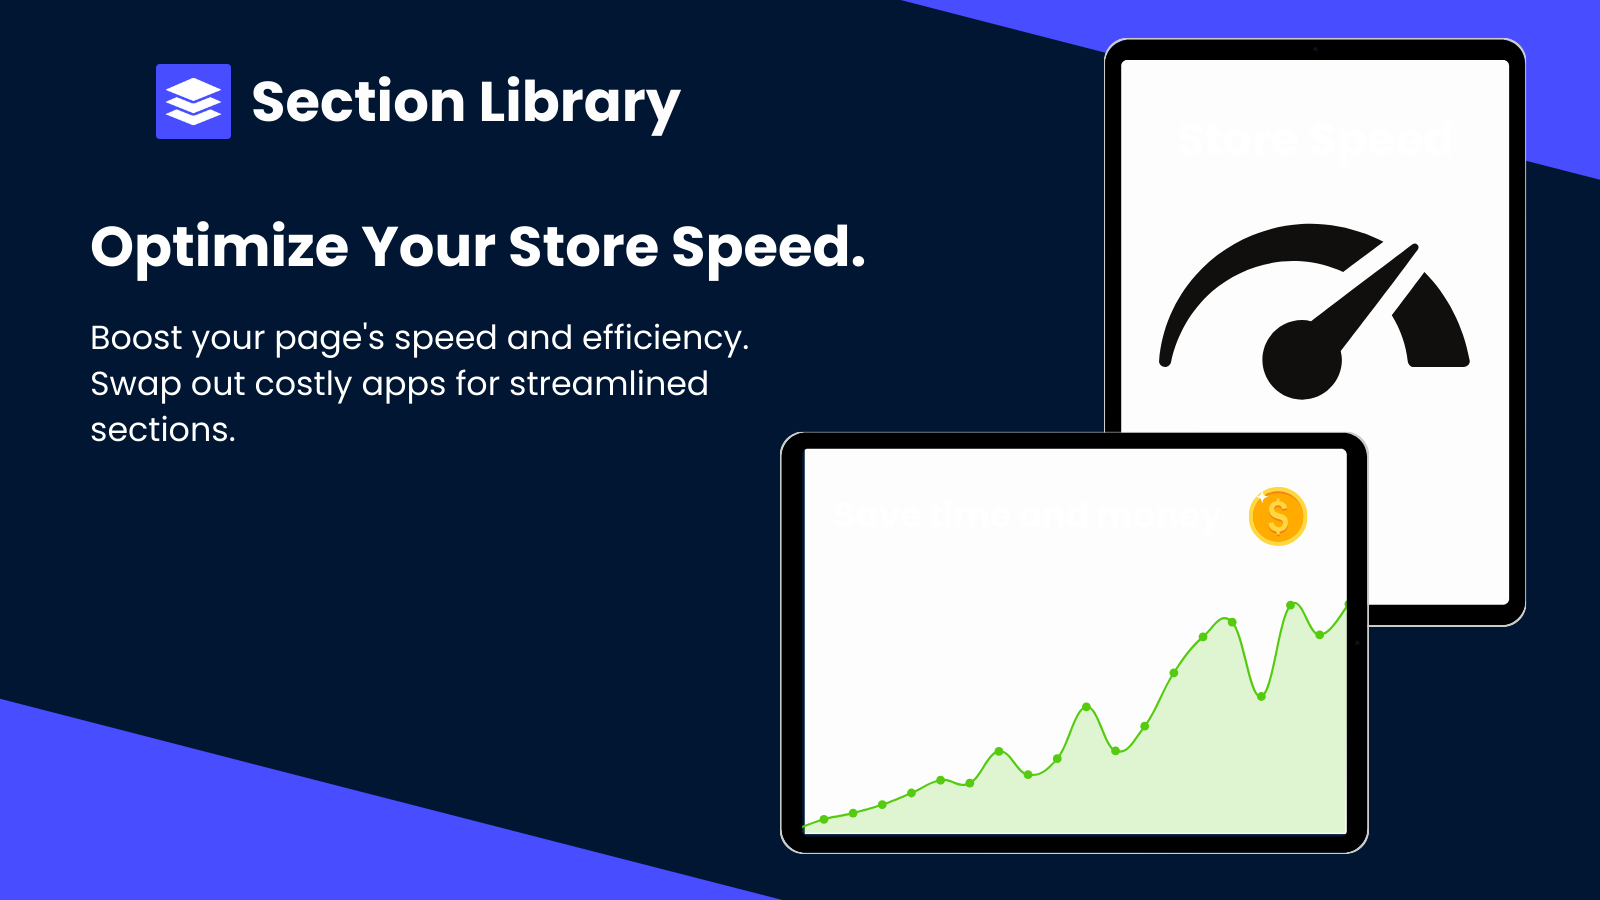 En förklaring om hur appen kan gynna butikens hastighet